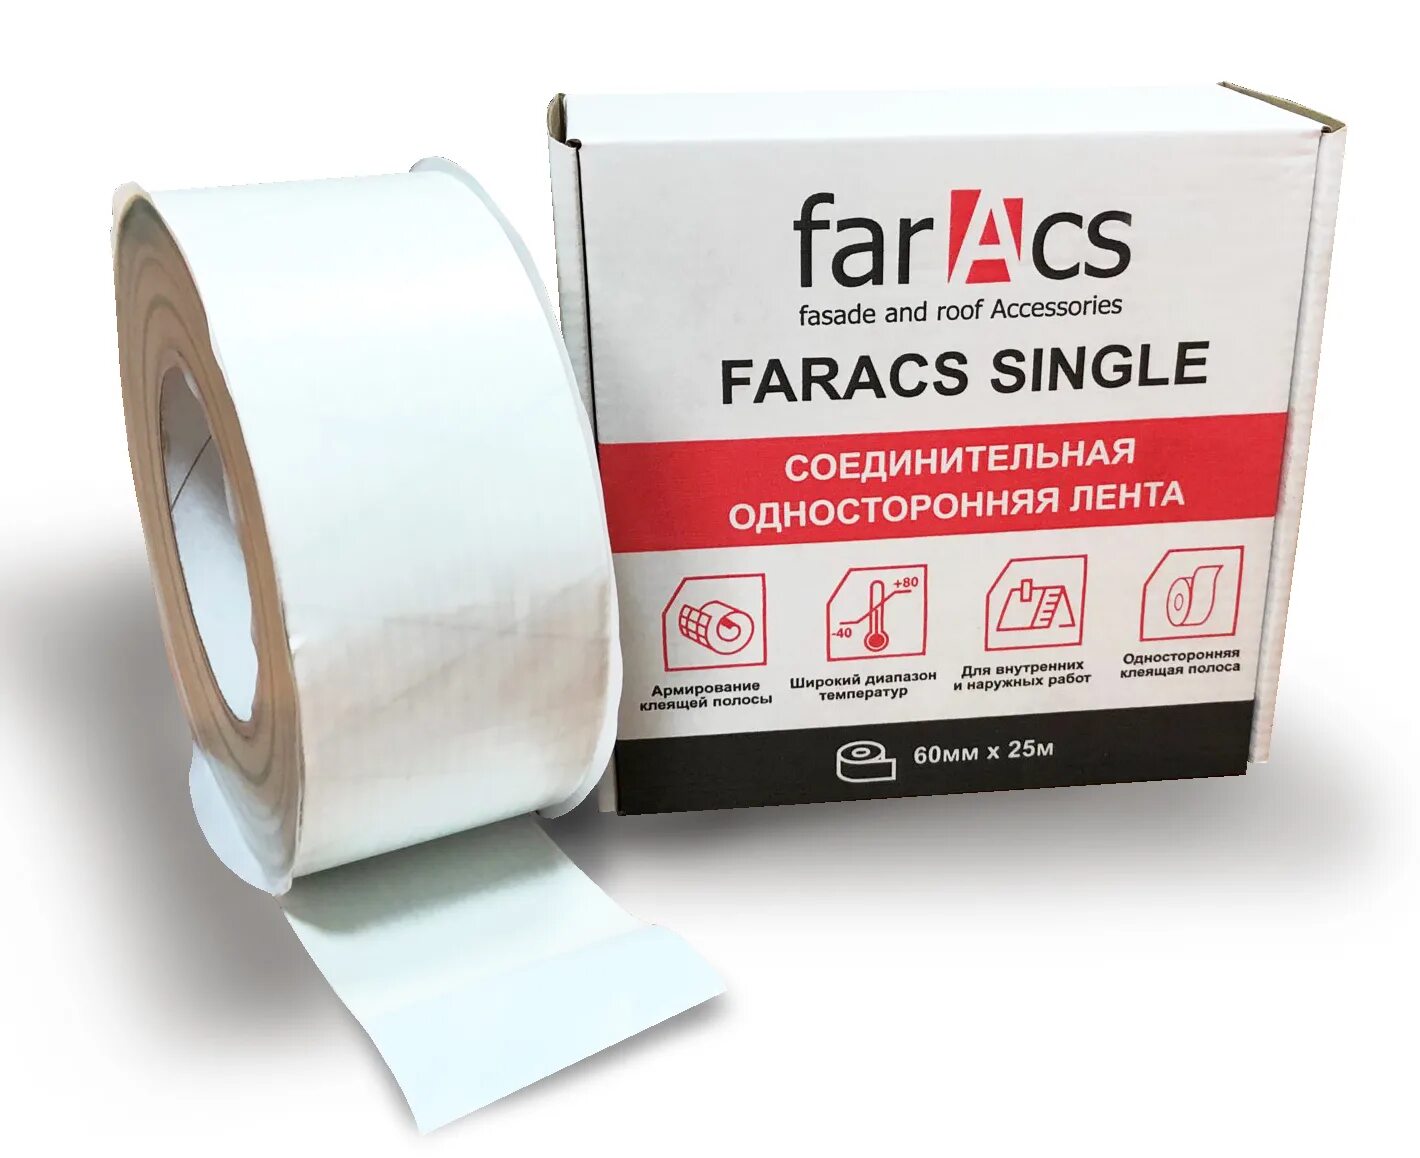 Faracs Single соединительная лента односторонняя 60мм х 25м белый. Faracs Premium Single соединительная лента односторонняя 60мм х 25м. Faracs двухсторонняя соединительная лента 30мм х 25м белый. Фаракс скотч.